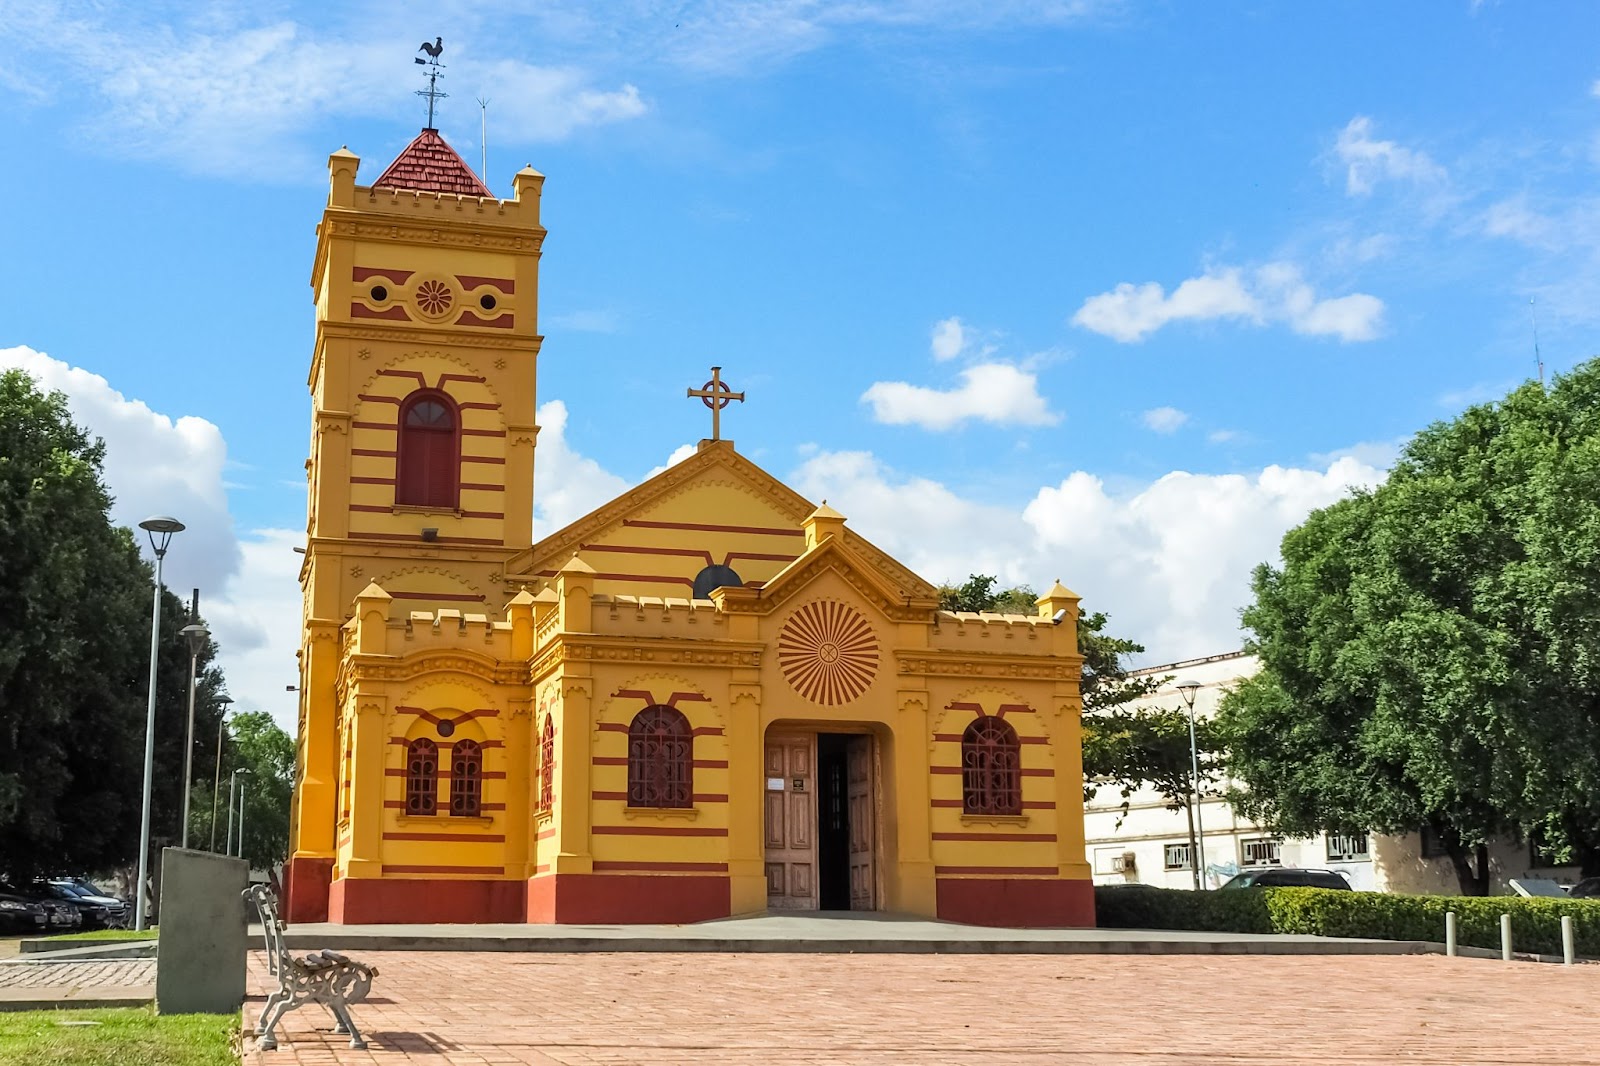 Foto da fachada Igreja Matriz Nossa Senhora do Carmo. Igreja amarela com janelas e detalhes em vermelho, centralizada na praça da cidade